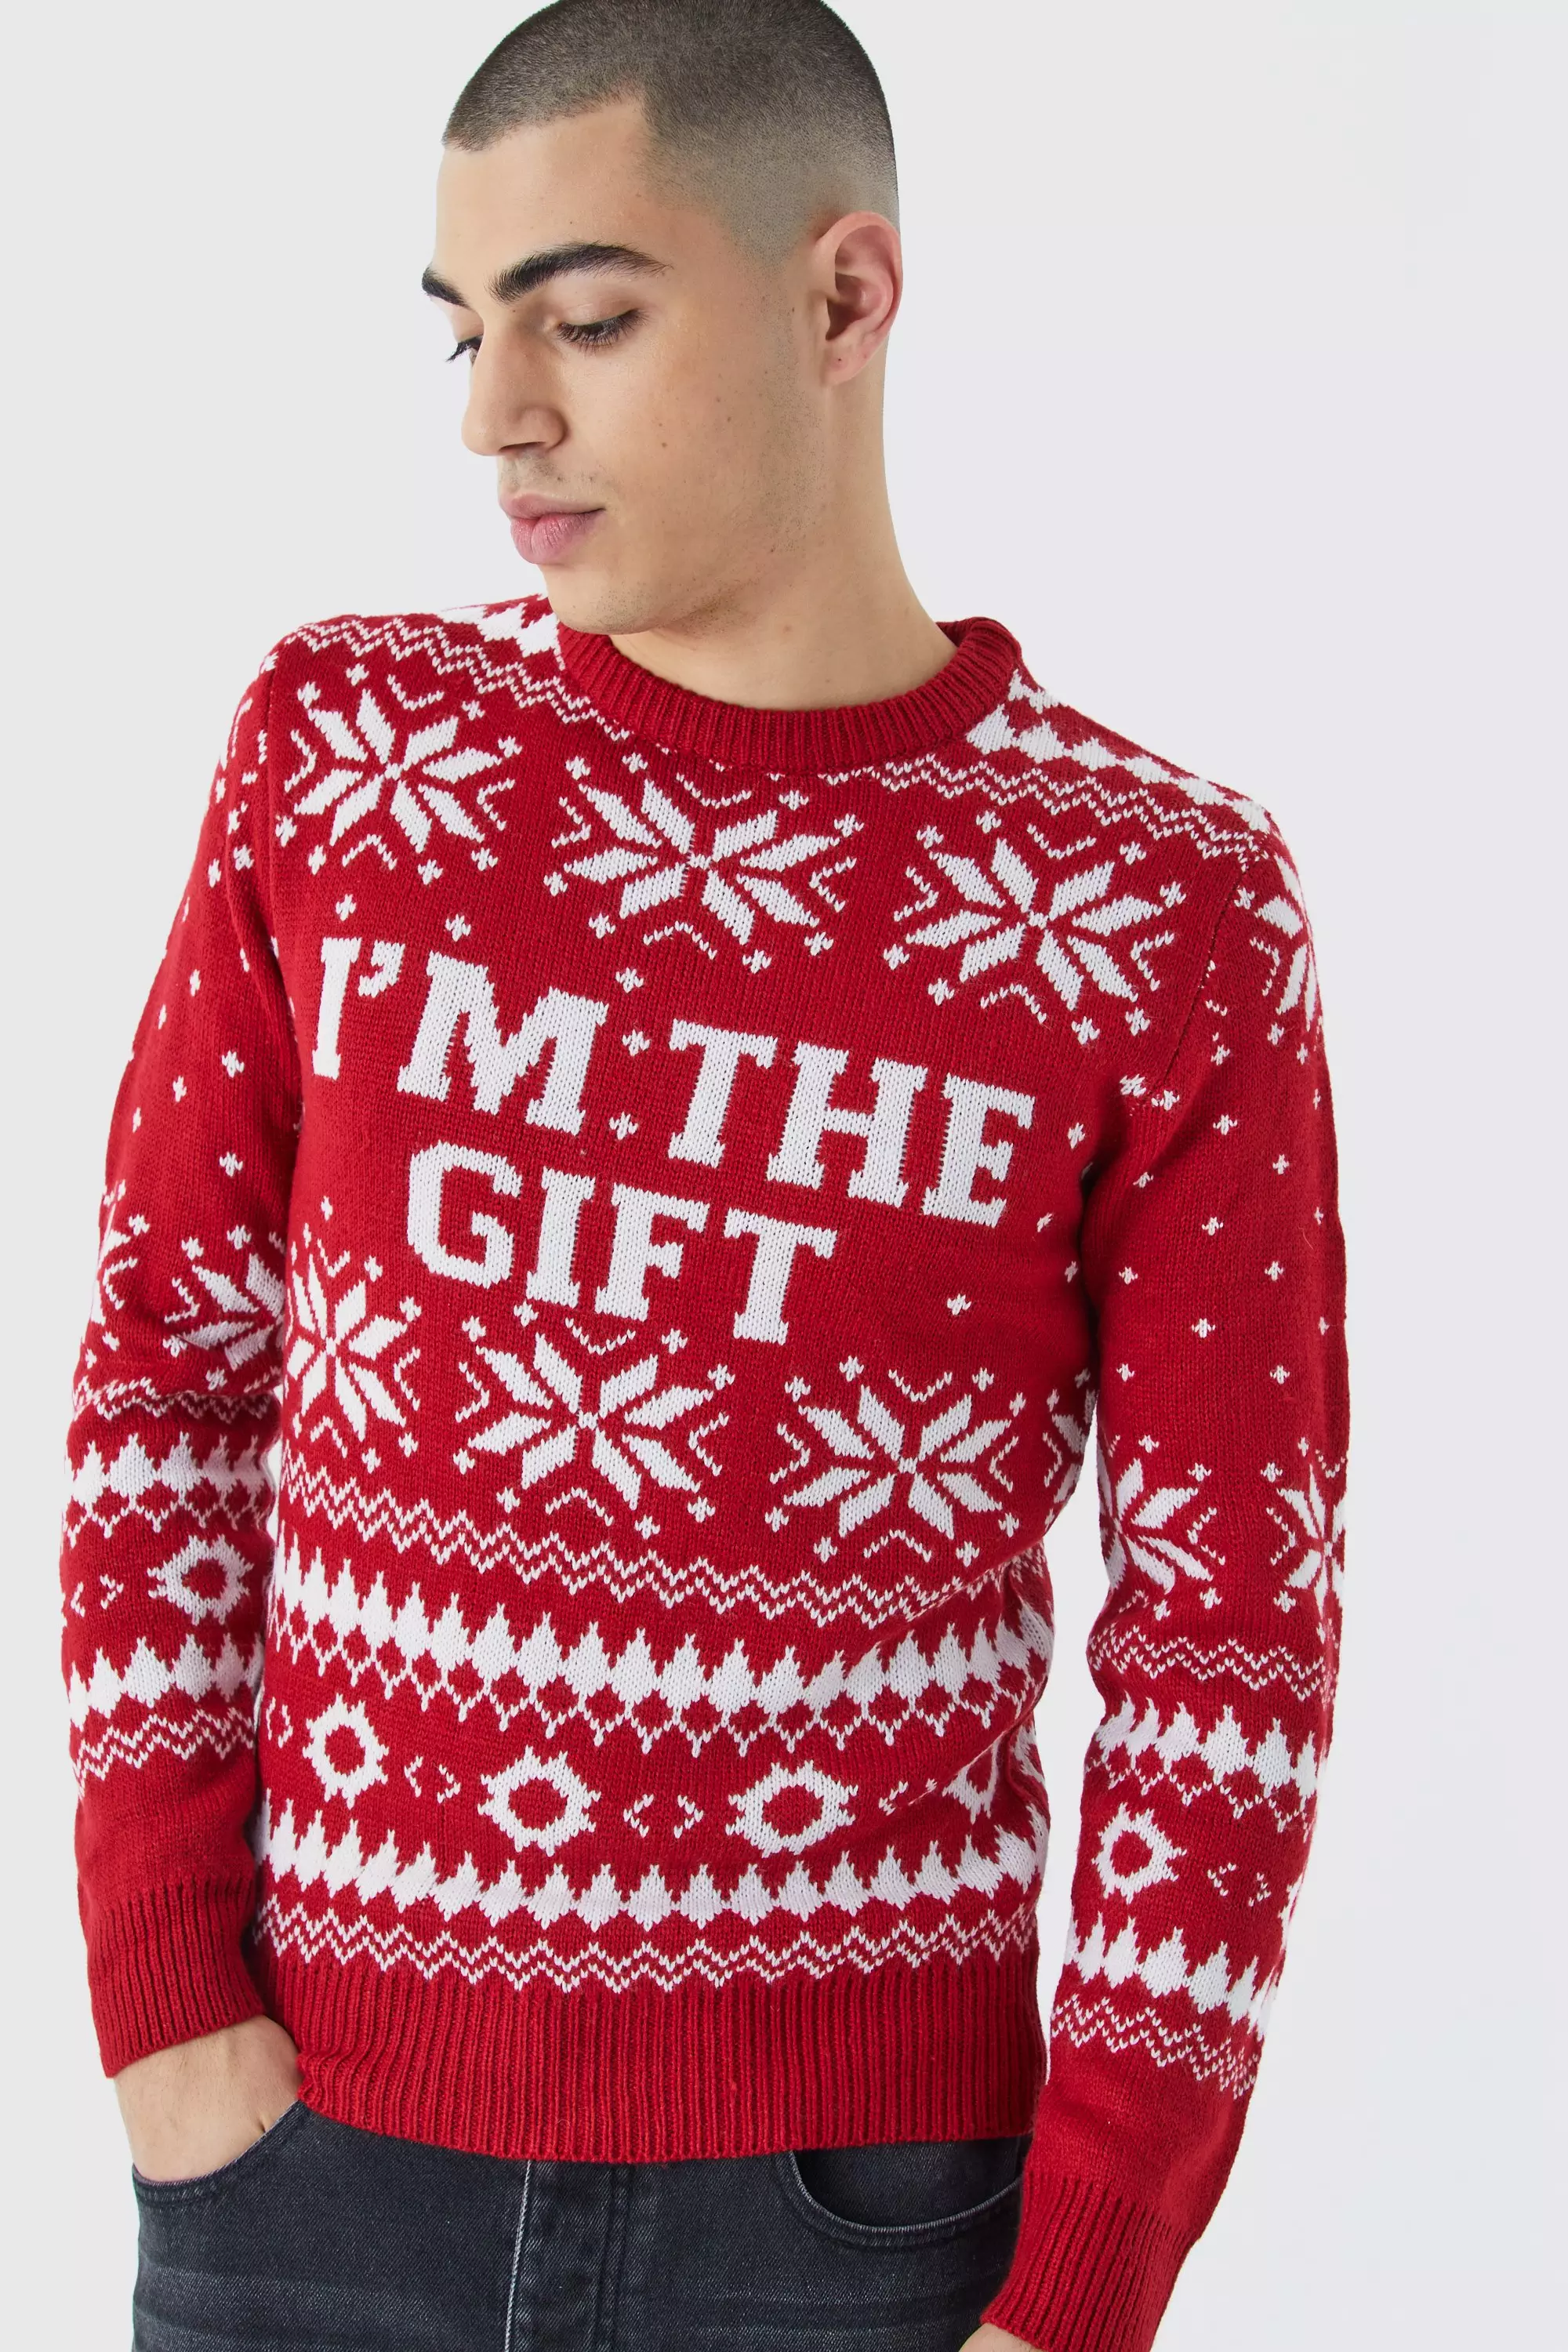 TML Rejoice AOP Knitted Sweater Gift Christmas For Men Women